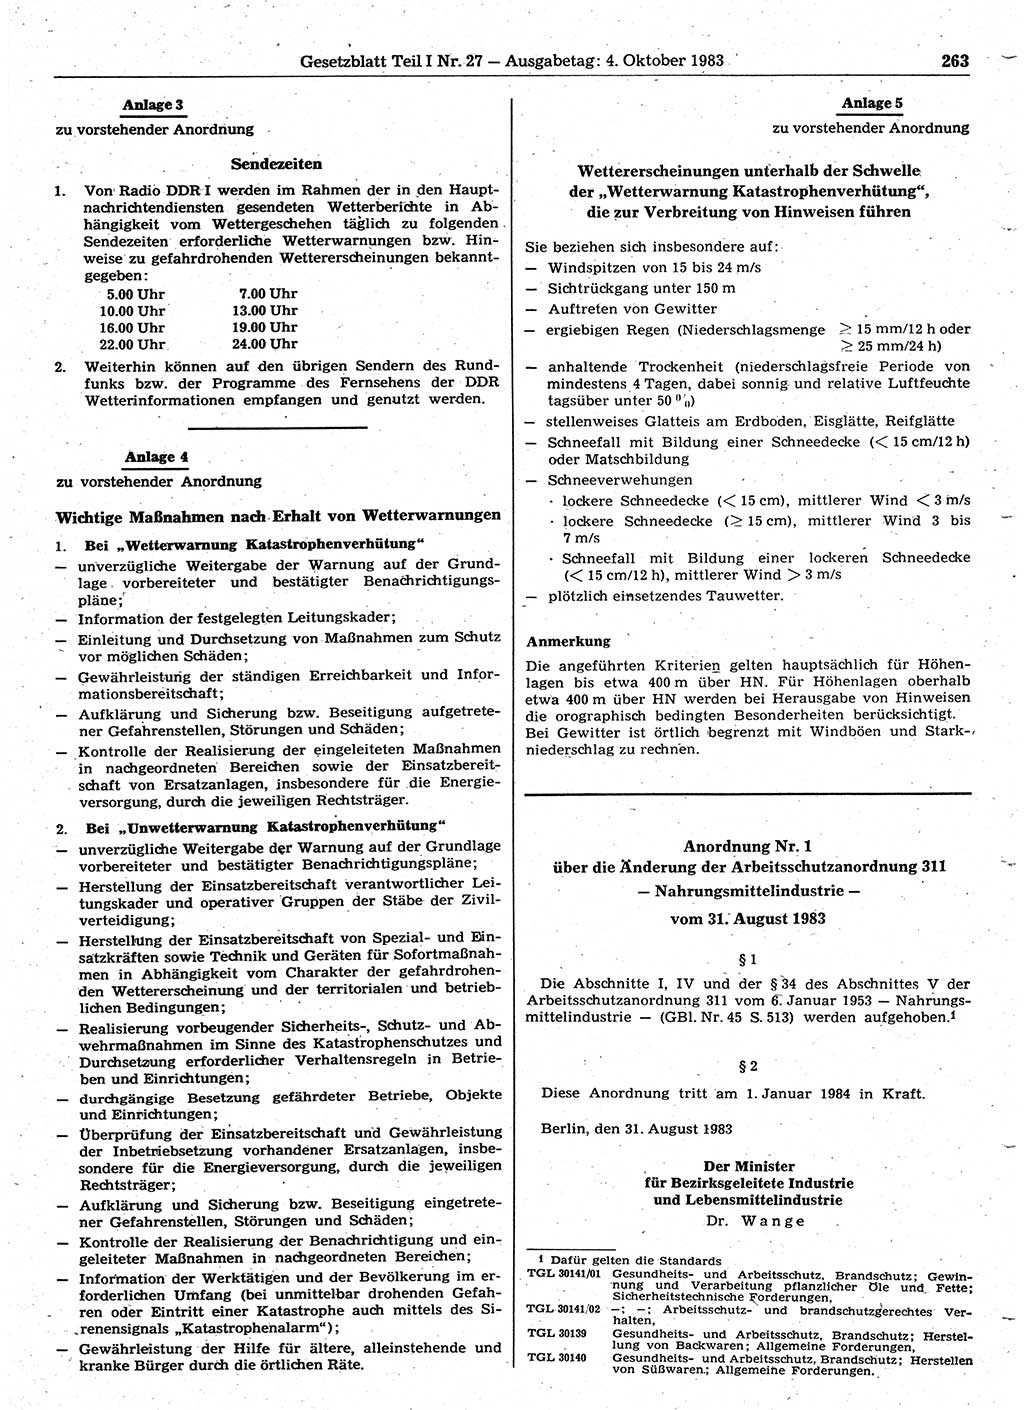 Gesetzblatt (GBl.) der Deutschen Demokratischen Republik (DDR) Teil Ⅰ 1983, Seite 263 (GBl. DDR Ⅰ 1983, S. 263)